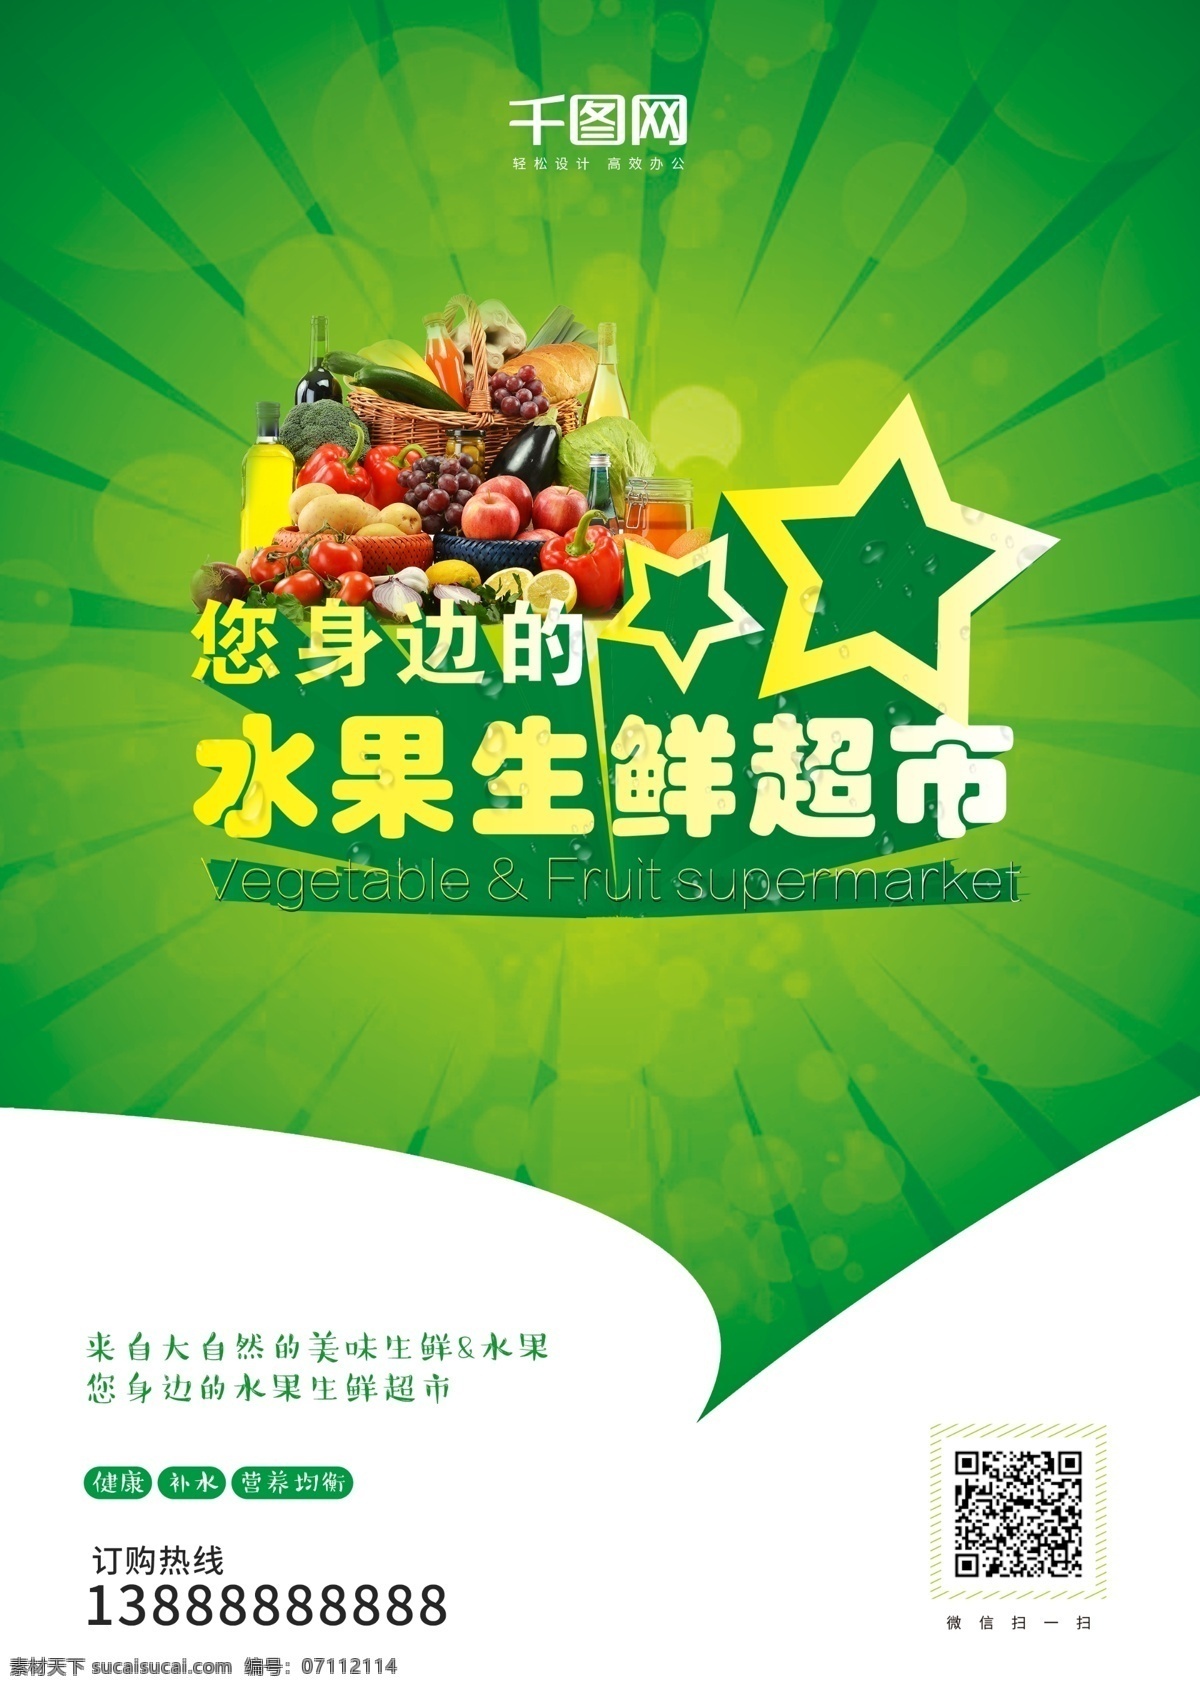 绿色 健康 有机 水果 生鲜 超市 单 页 营养 蔬菜 超市单页